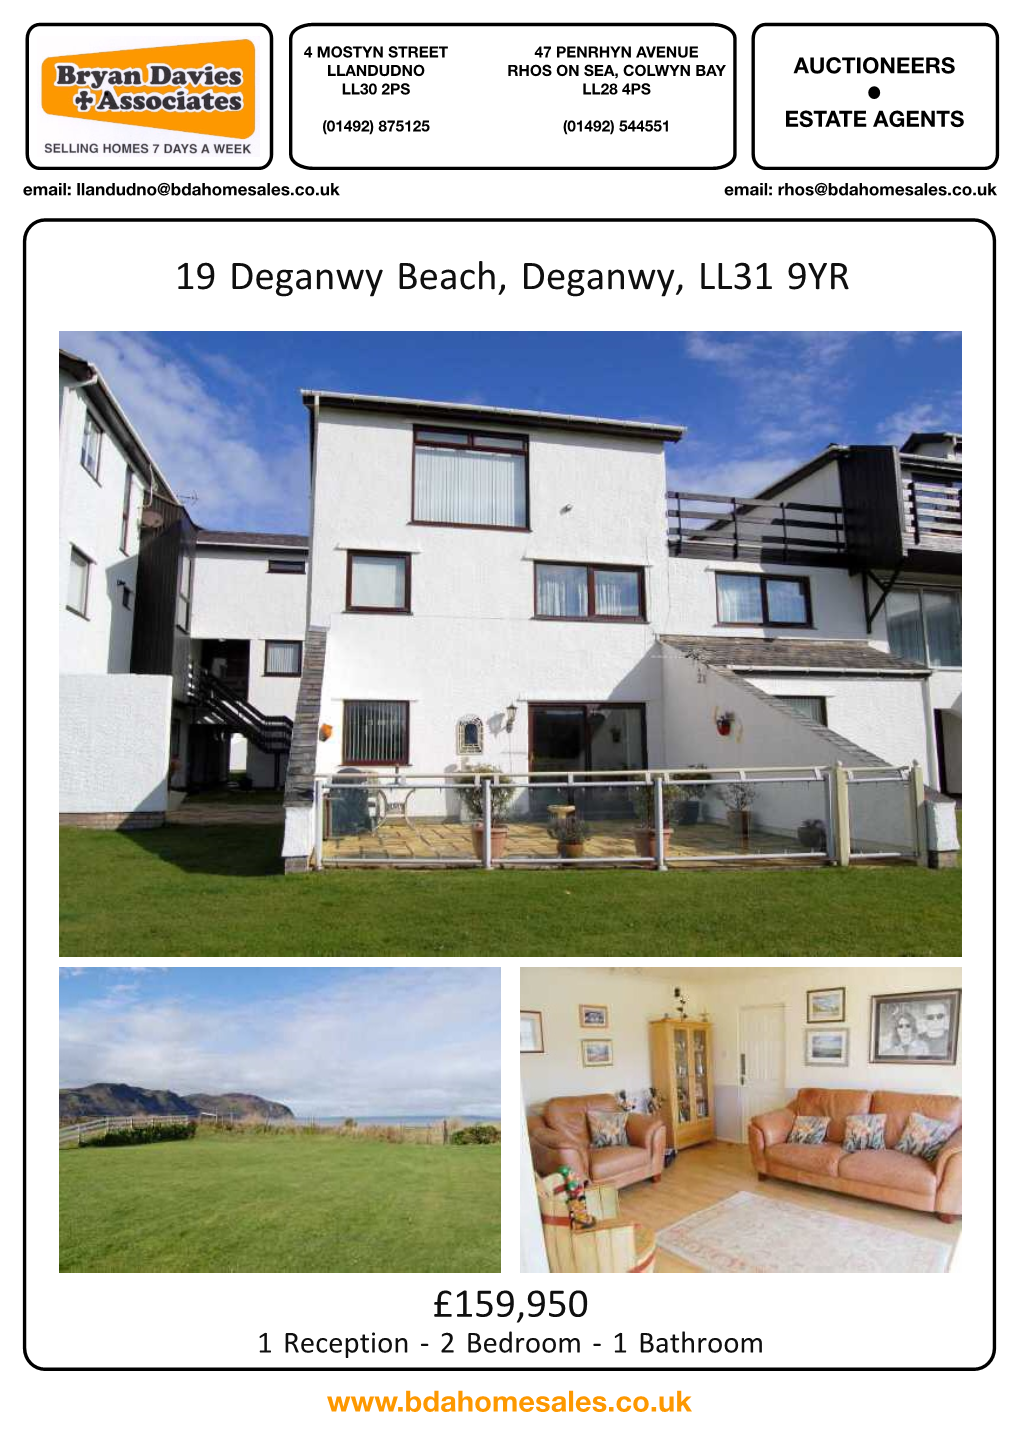 19 Deganwy Beach, Deganwy, LL31 9YR £159,950